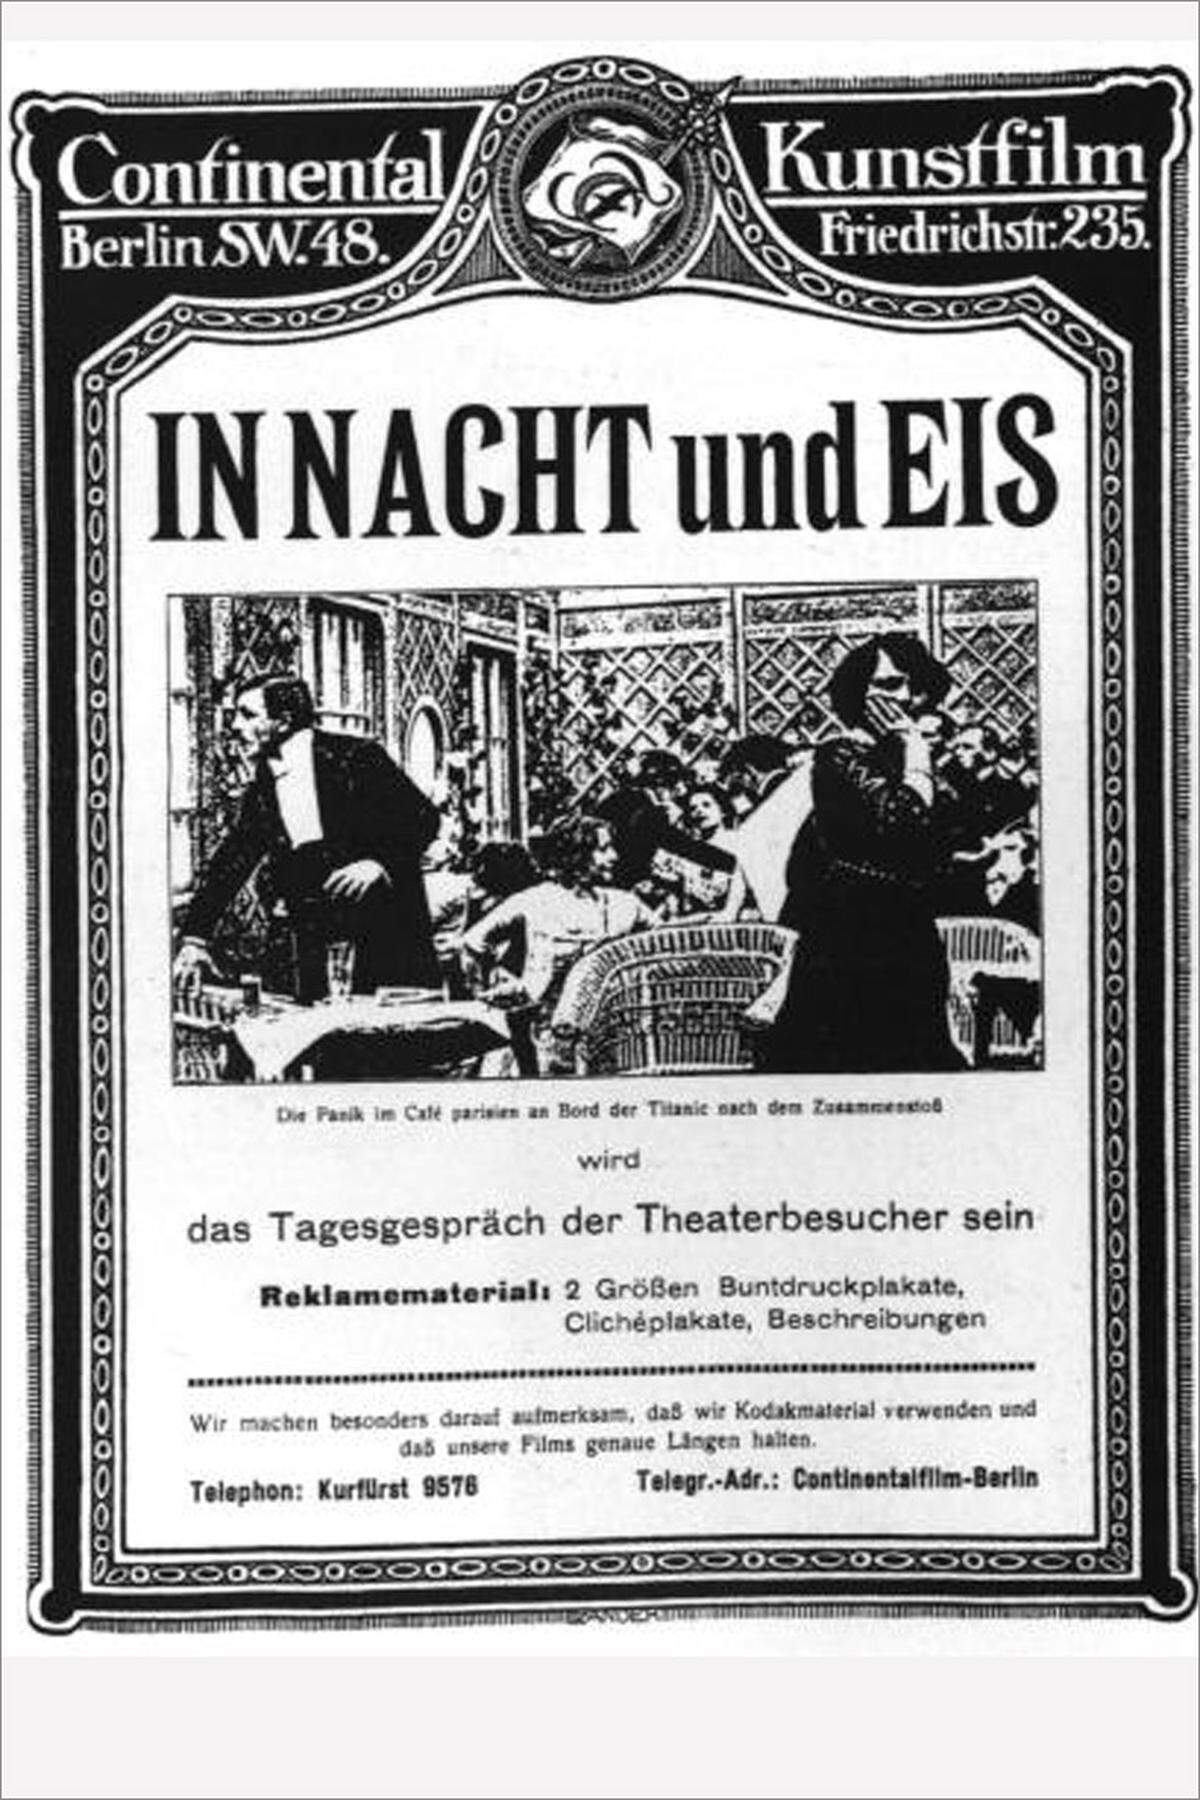 Nur drei Monate später kam der etwa halbstündige deutsche Stummfilm "In Nacht und Eis" heraus, der als erster Spielfilm zur Titanic gewertet wird und erst 1998 im Besitz eines deutschen Sammlers wiedergefunden wurde. Er ist auch online auf YouTube zu sehen.